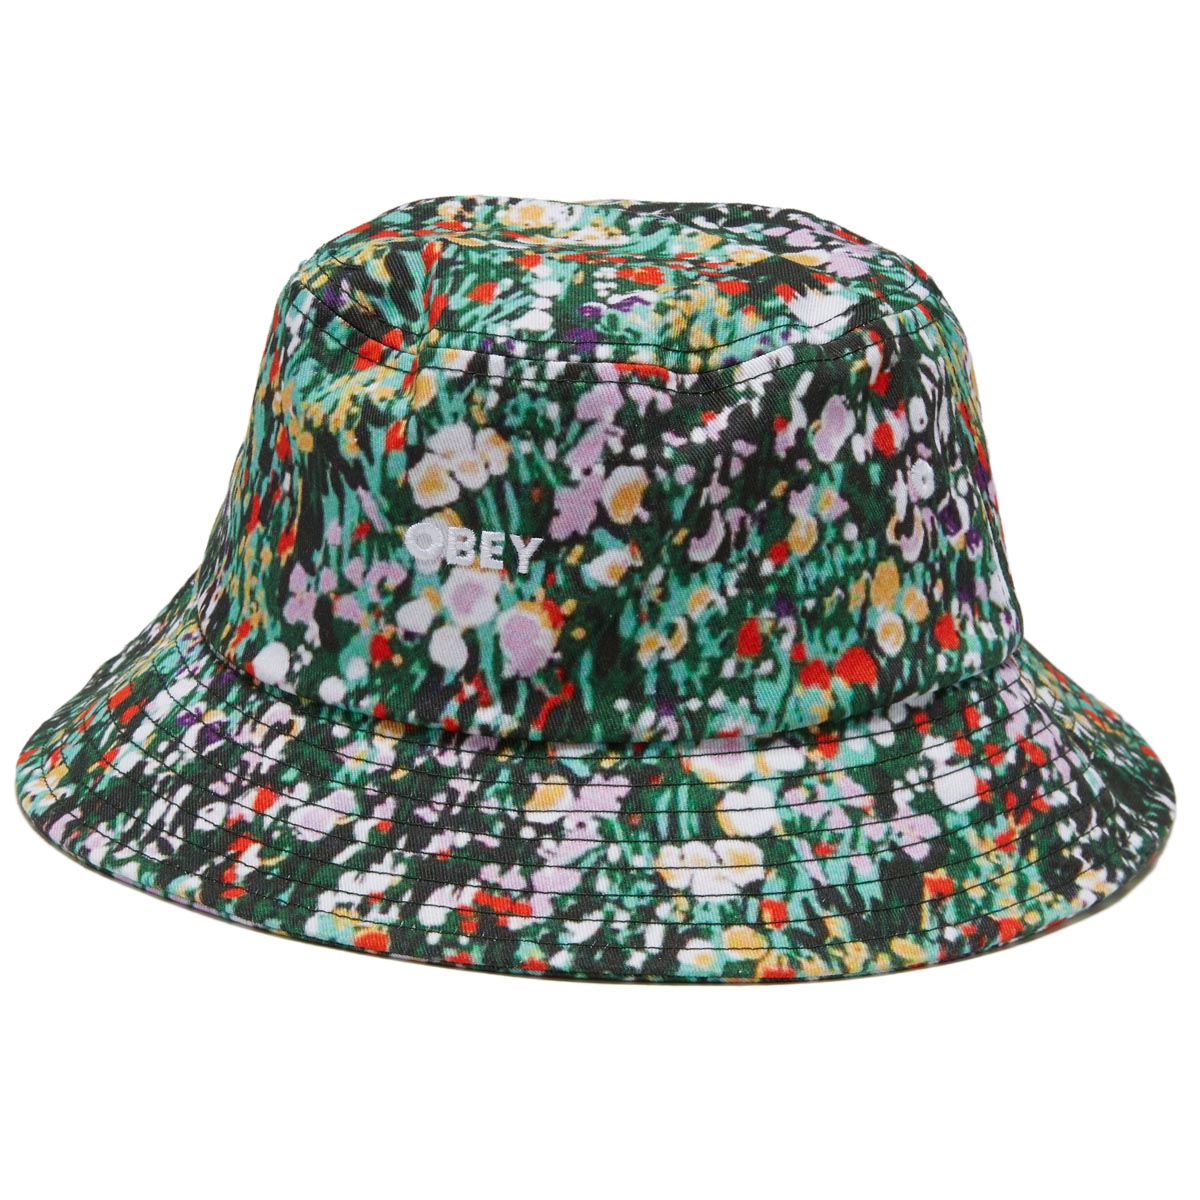 Obey Garden Bucket Hat - Green Multi image 1